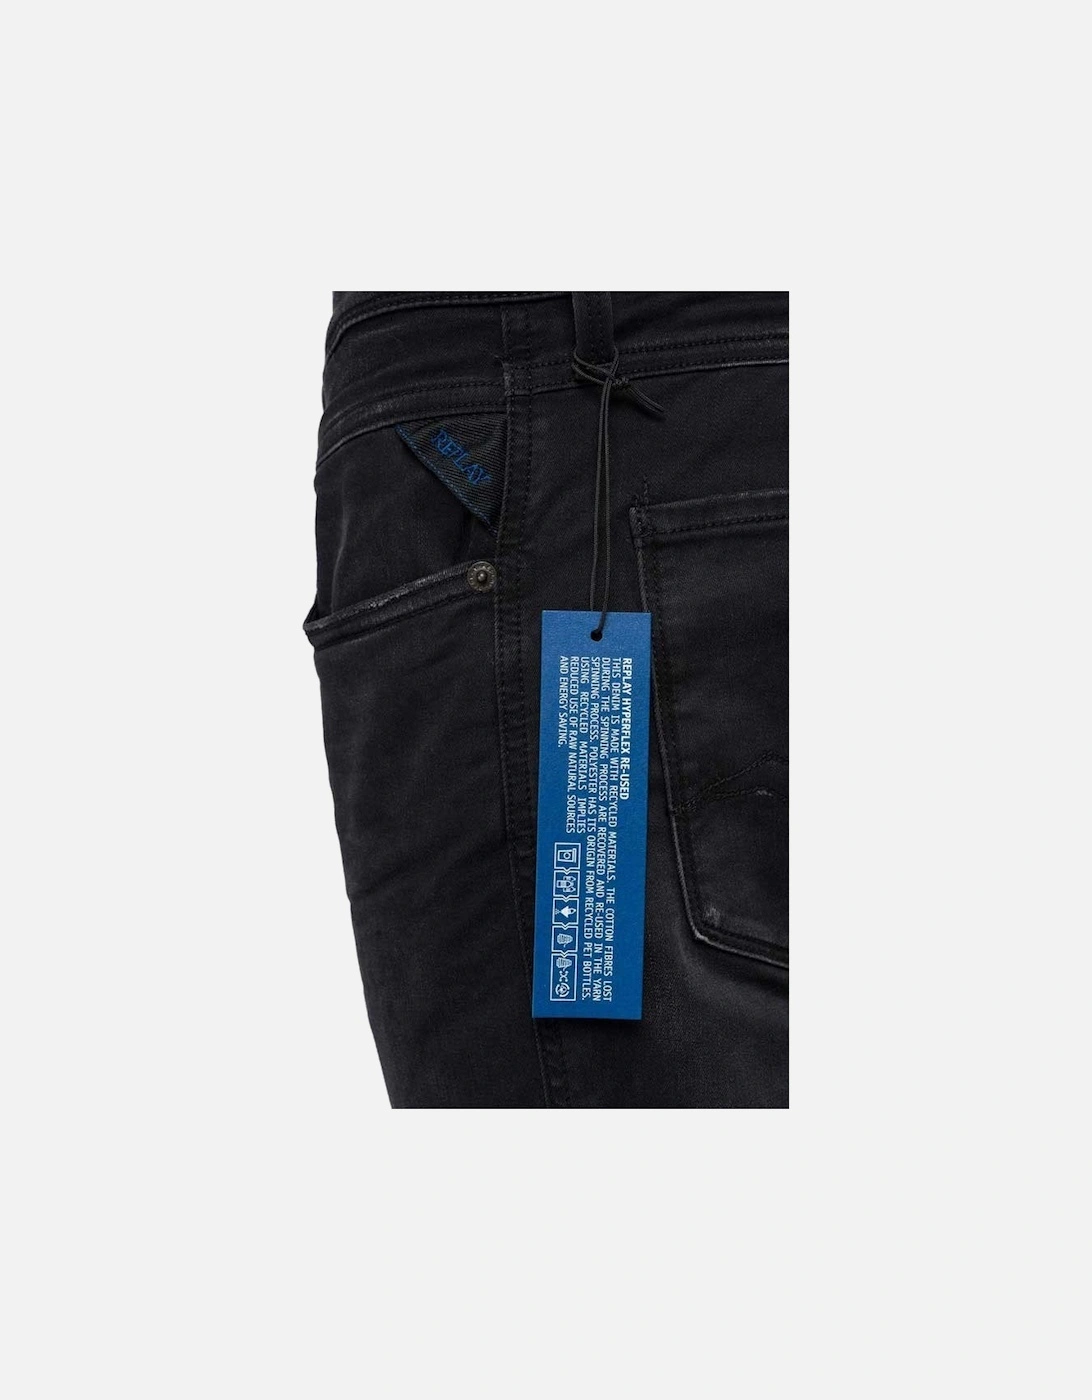 Anbass Hyperflex Black Stretch Slim Fit Jeans